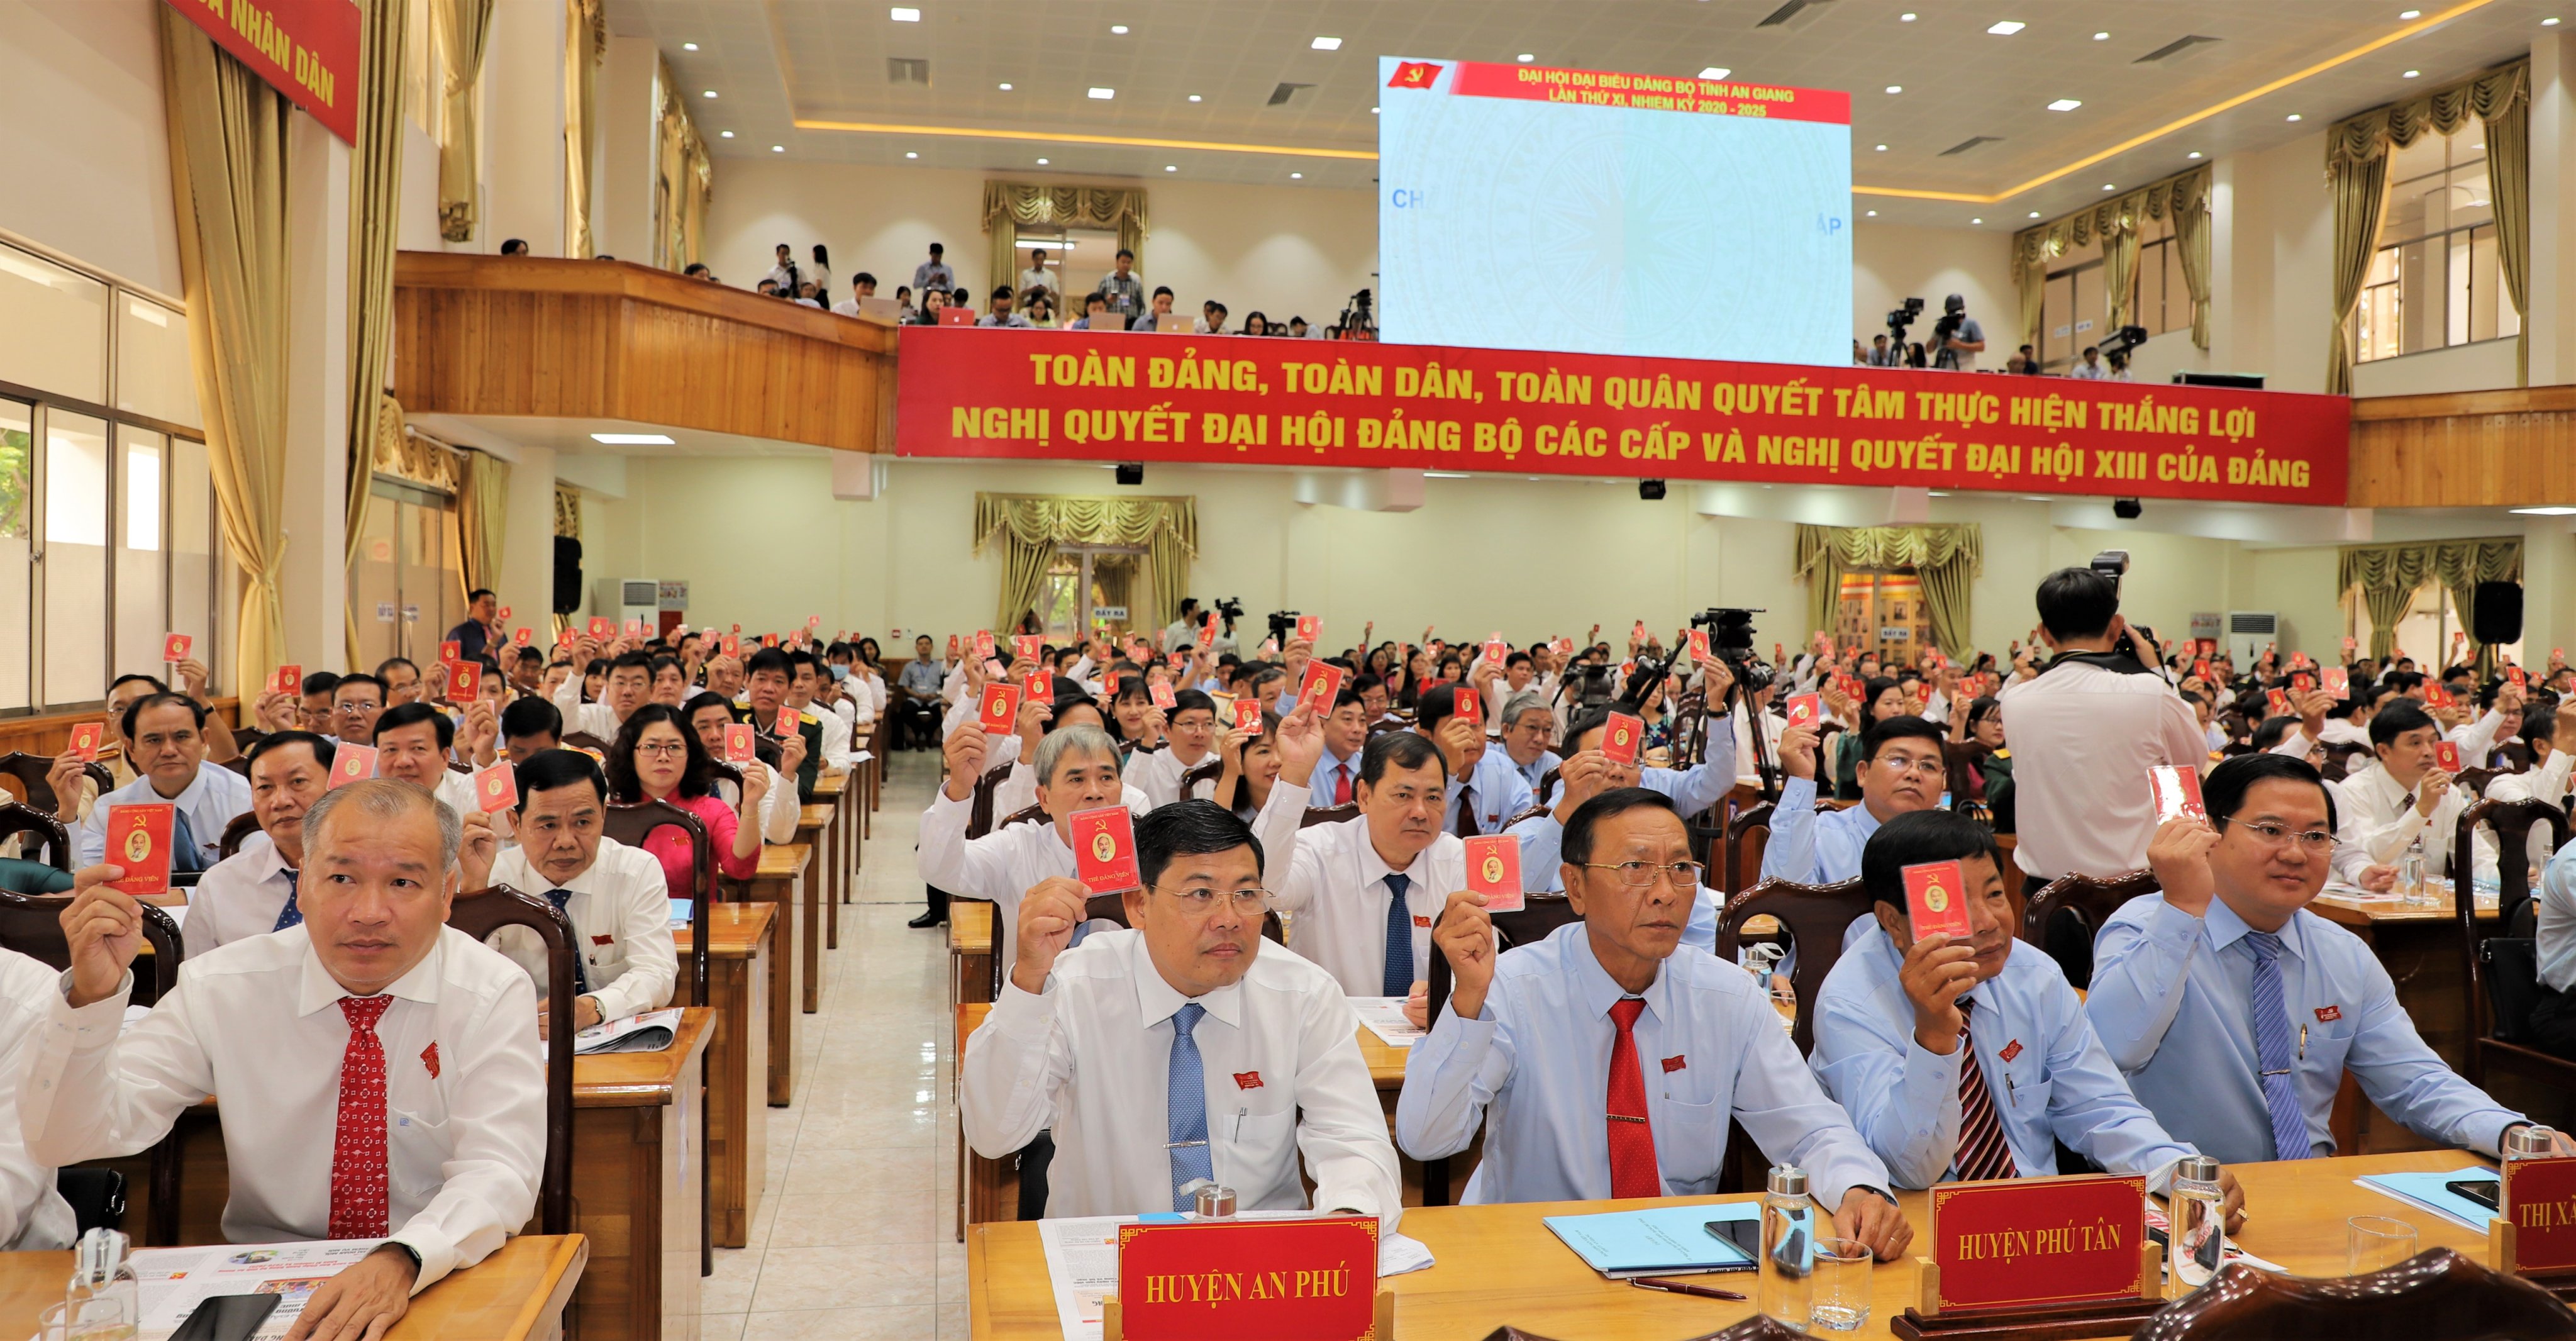 Les délégués ont voté pour approuver la résolution du 7e Congrès provincial du Parti. Photo: baobariavungtau